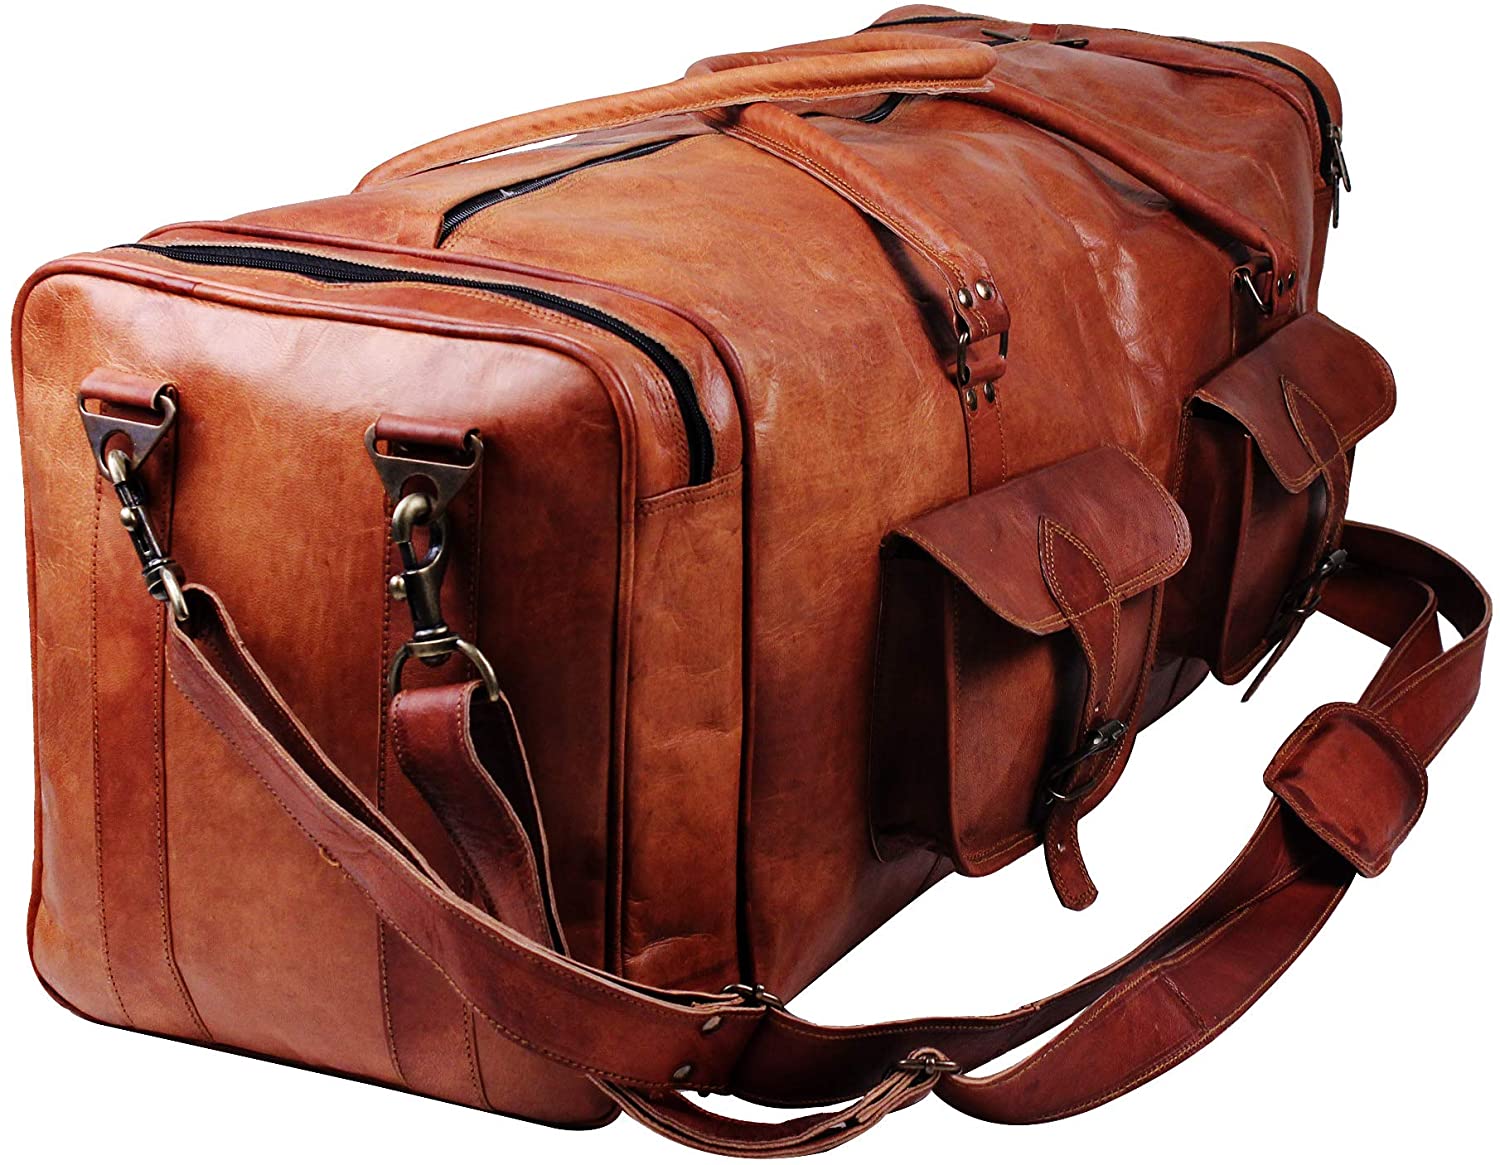 stylish gym leather duffle bag